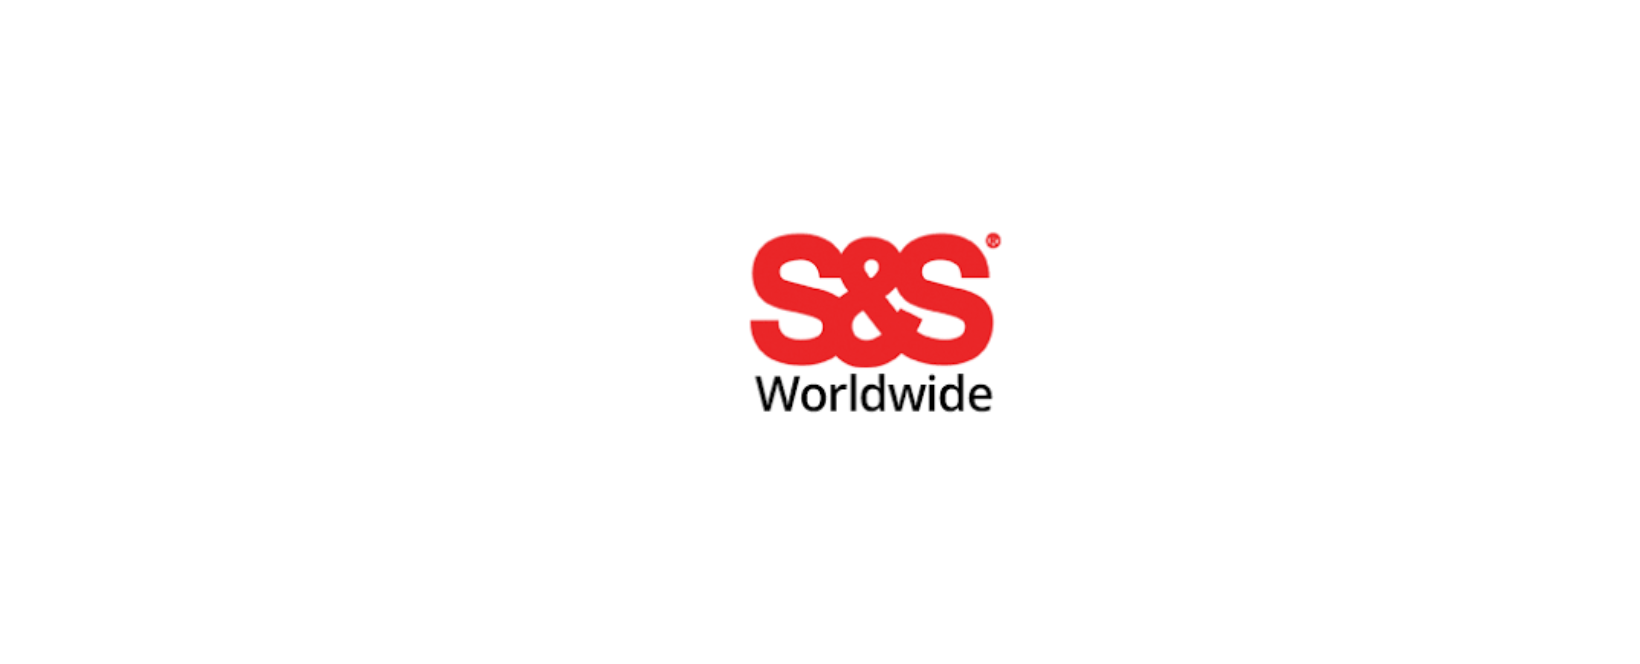 S&S Worldwide Discount Code 2022